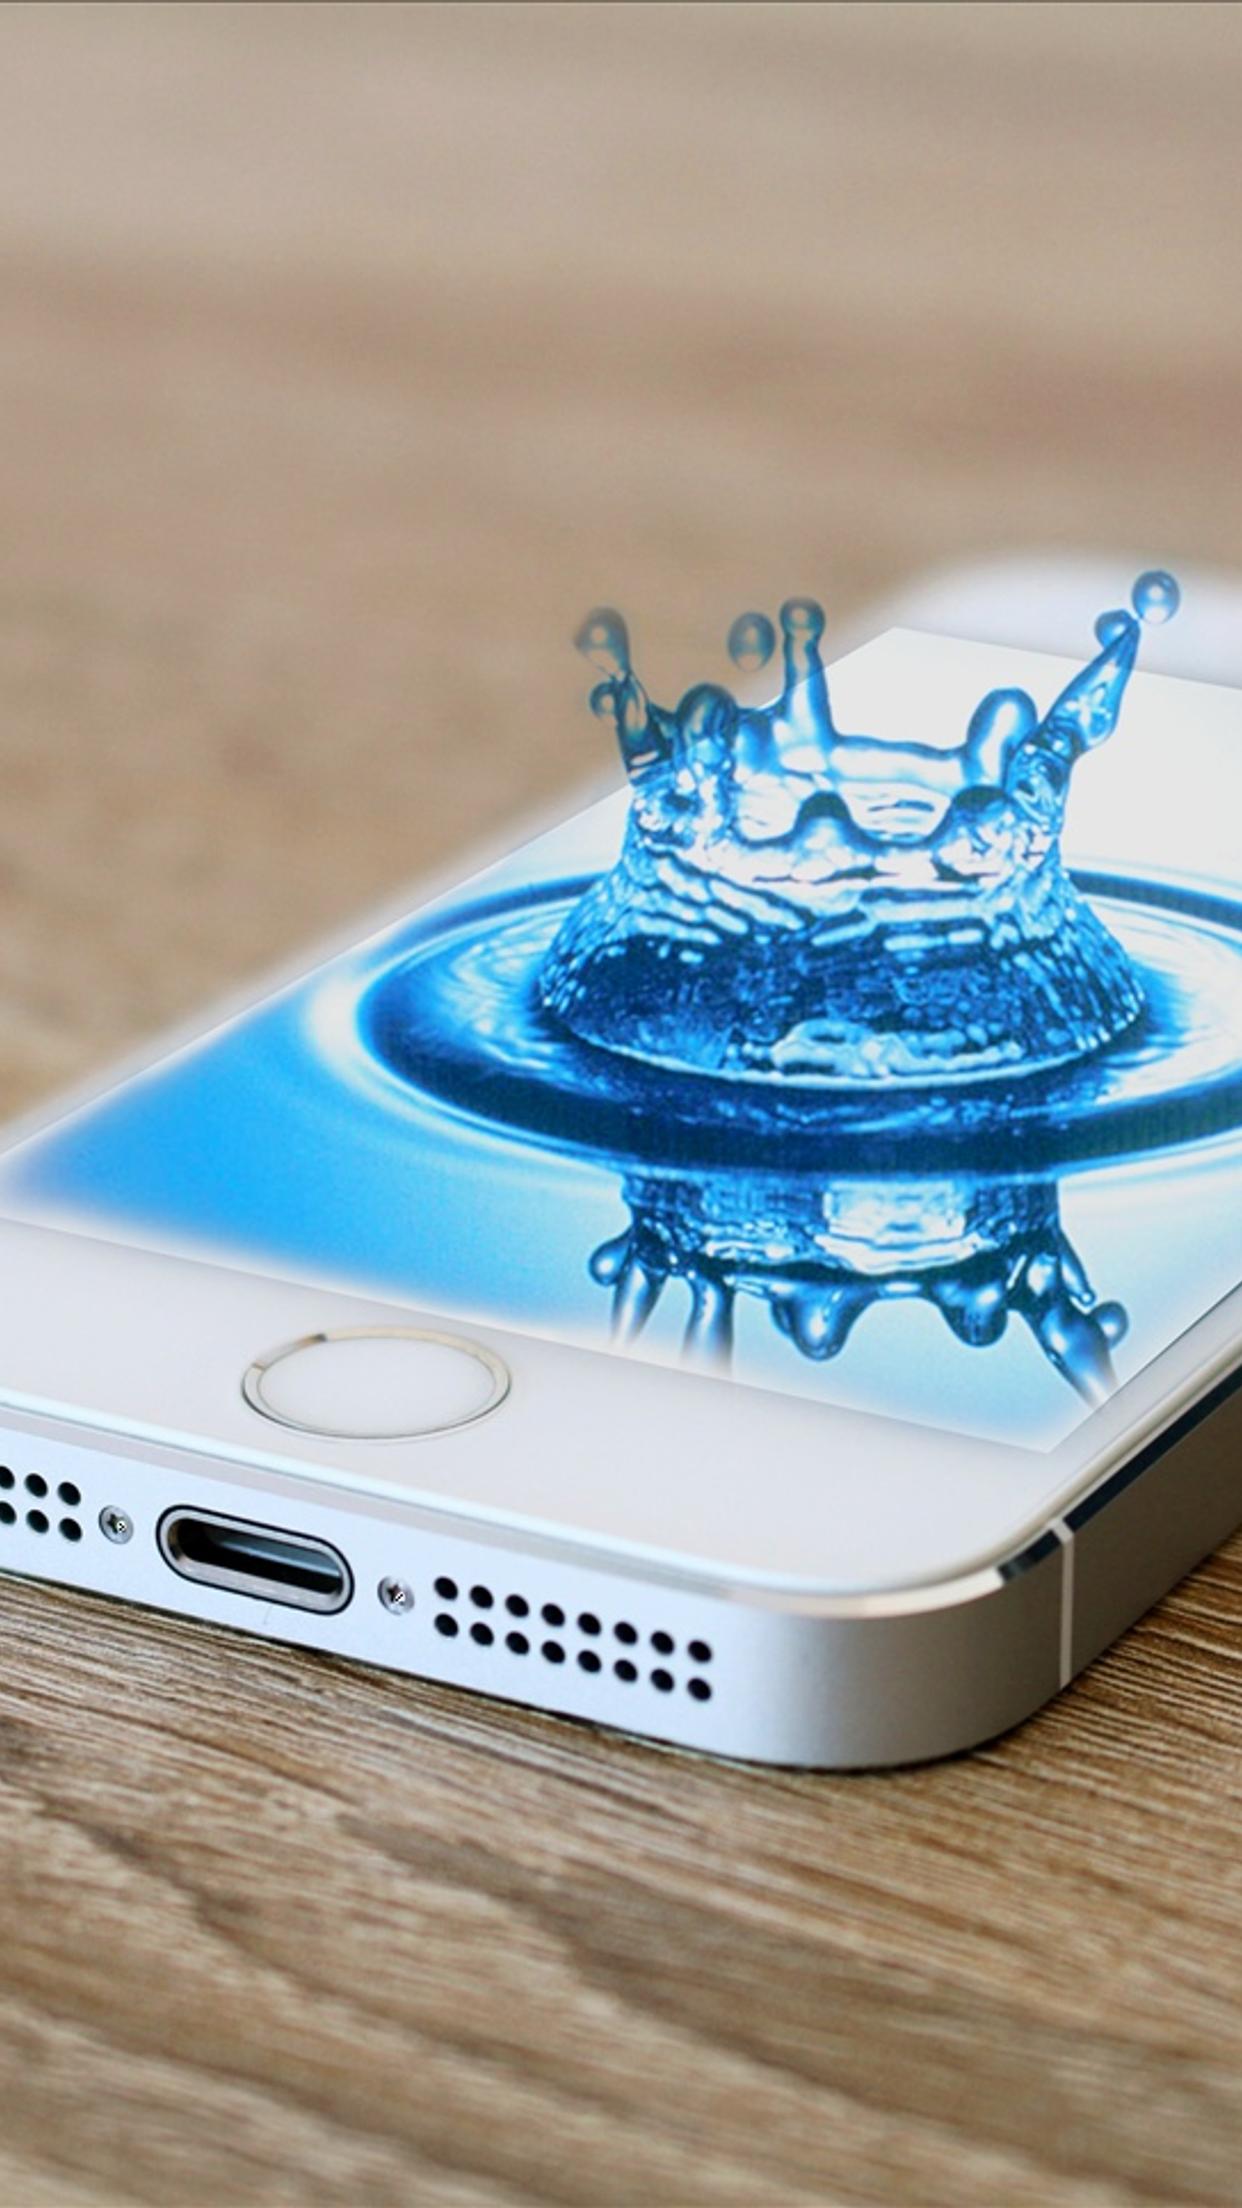 Splash water drop in iPhone 5s phone - Abstract 3D wallpaper